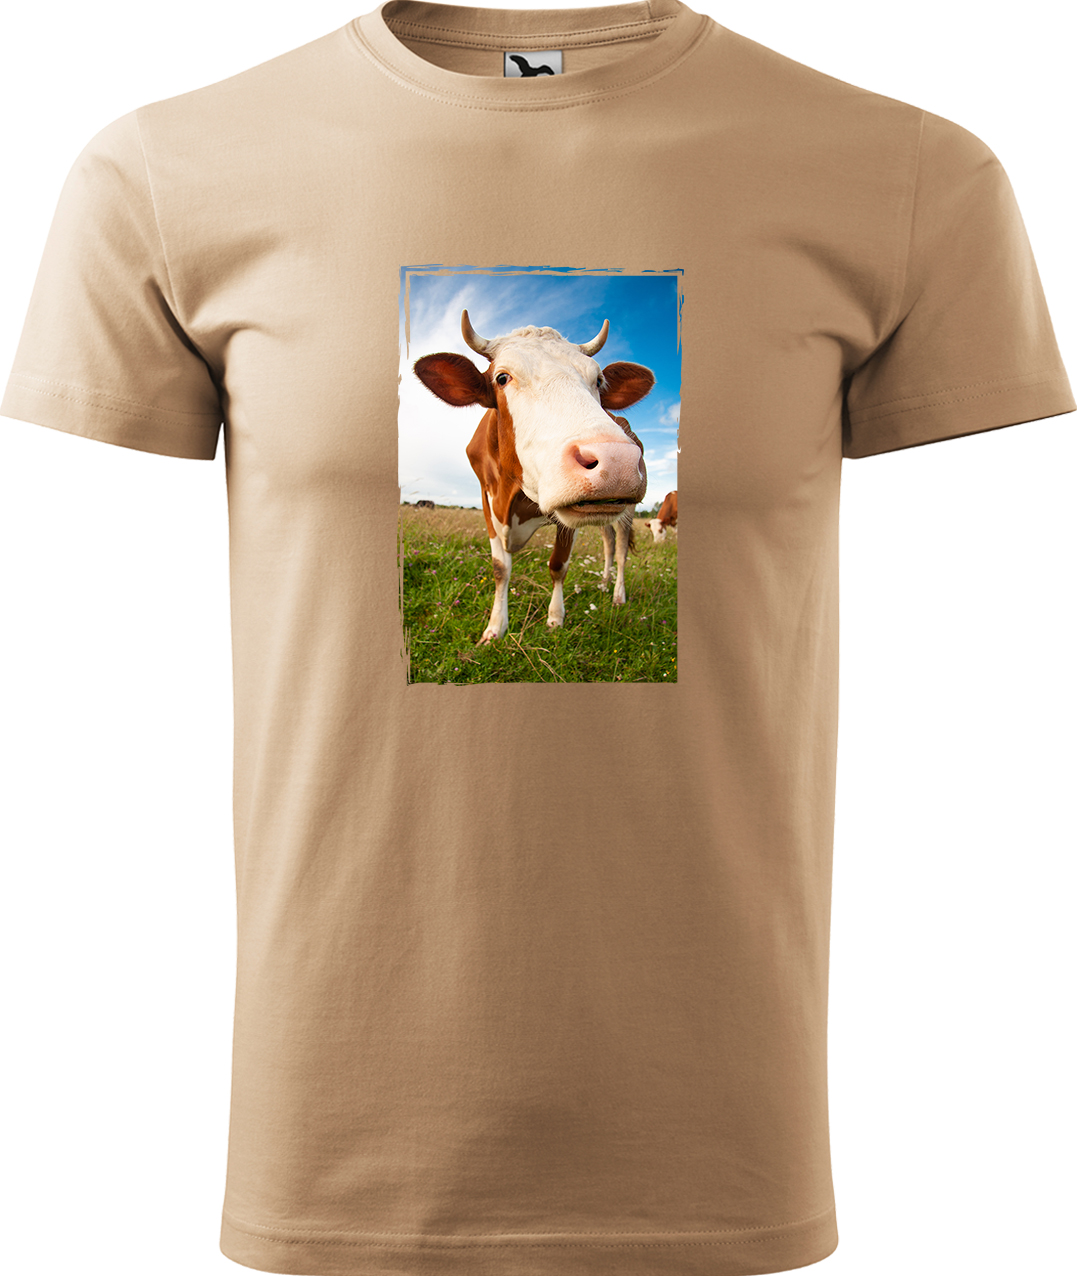 Pánské tričko s krávou - Na pastvě Velikost: XL, Barva: Písková (08), Střih: pánský